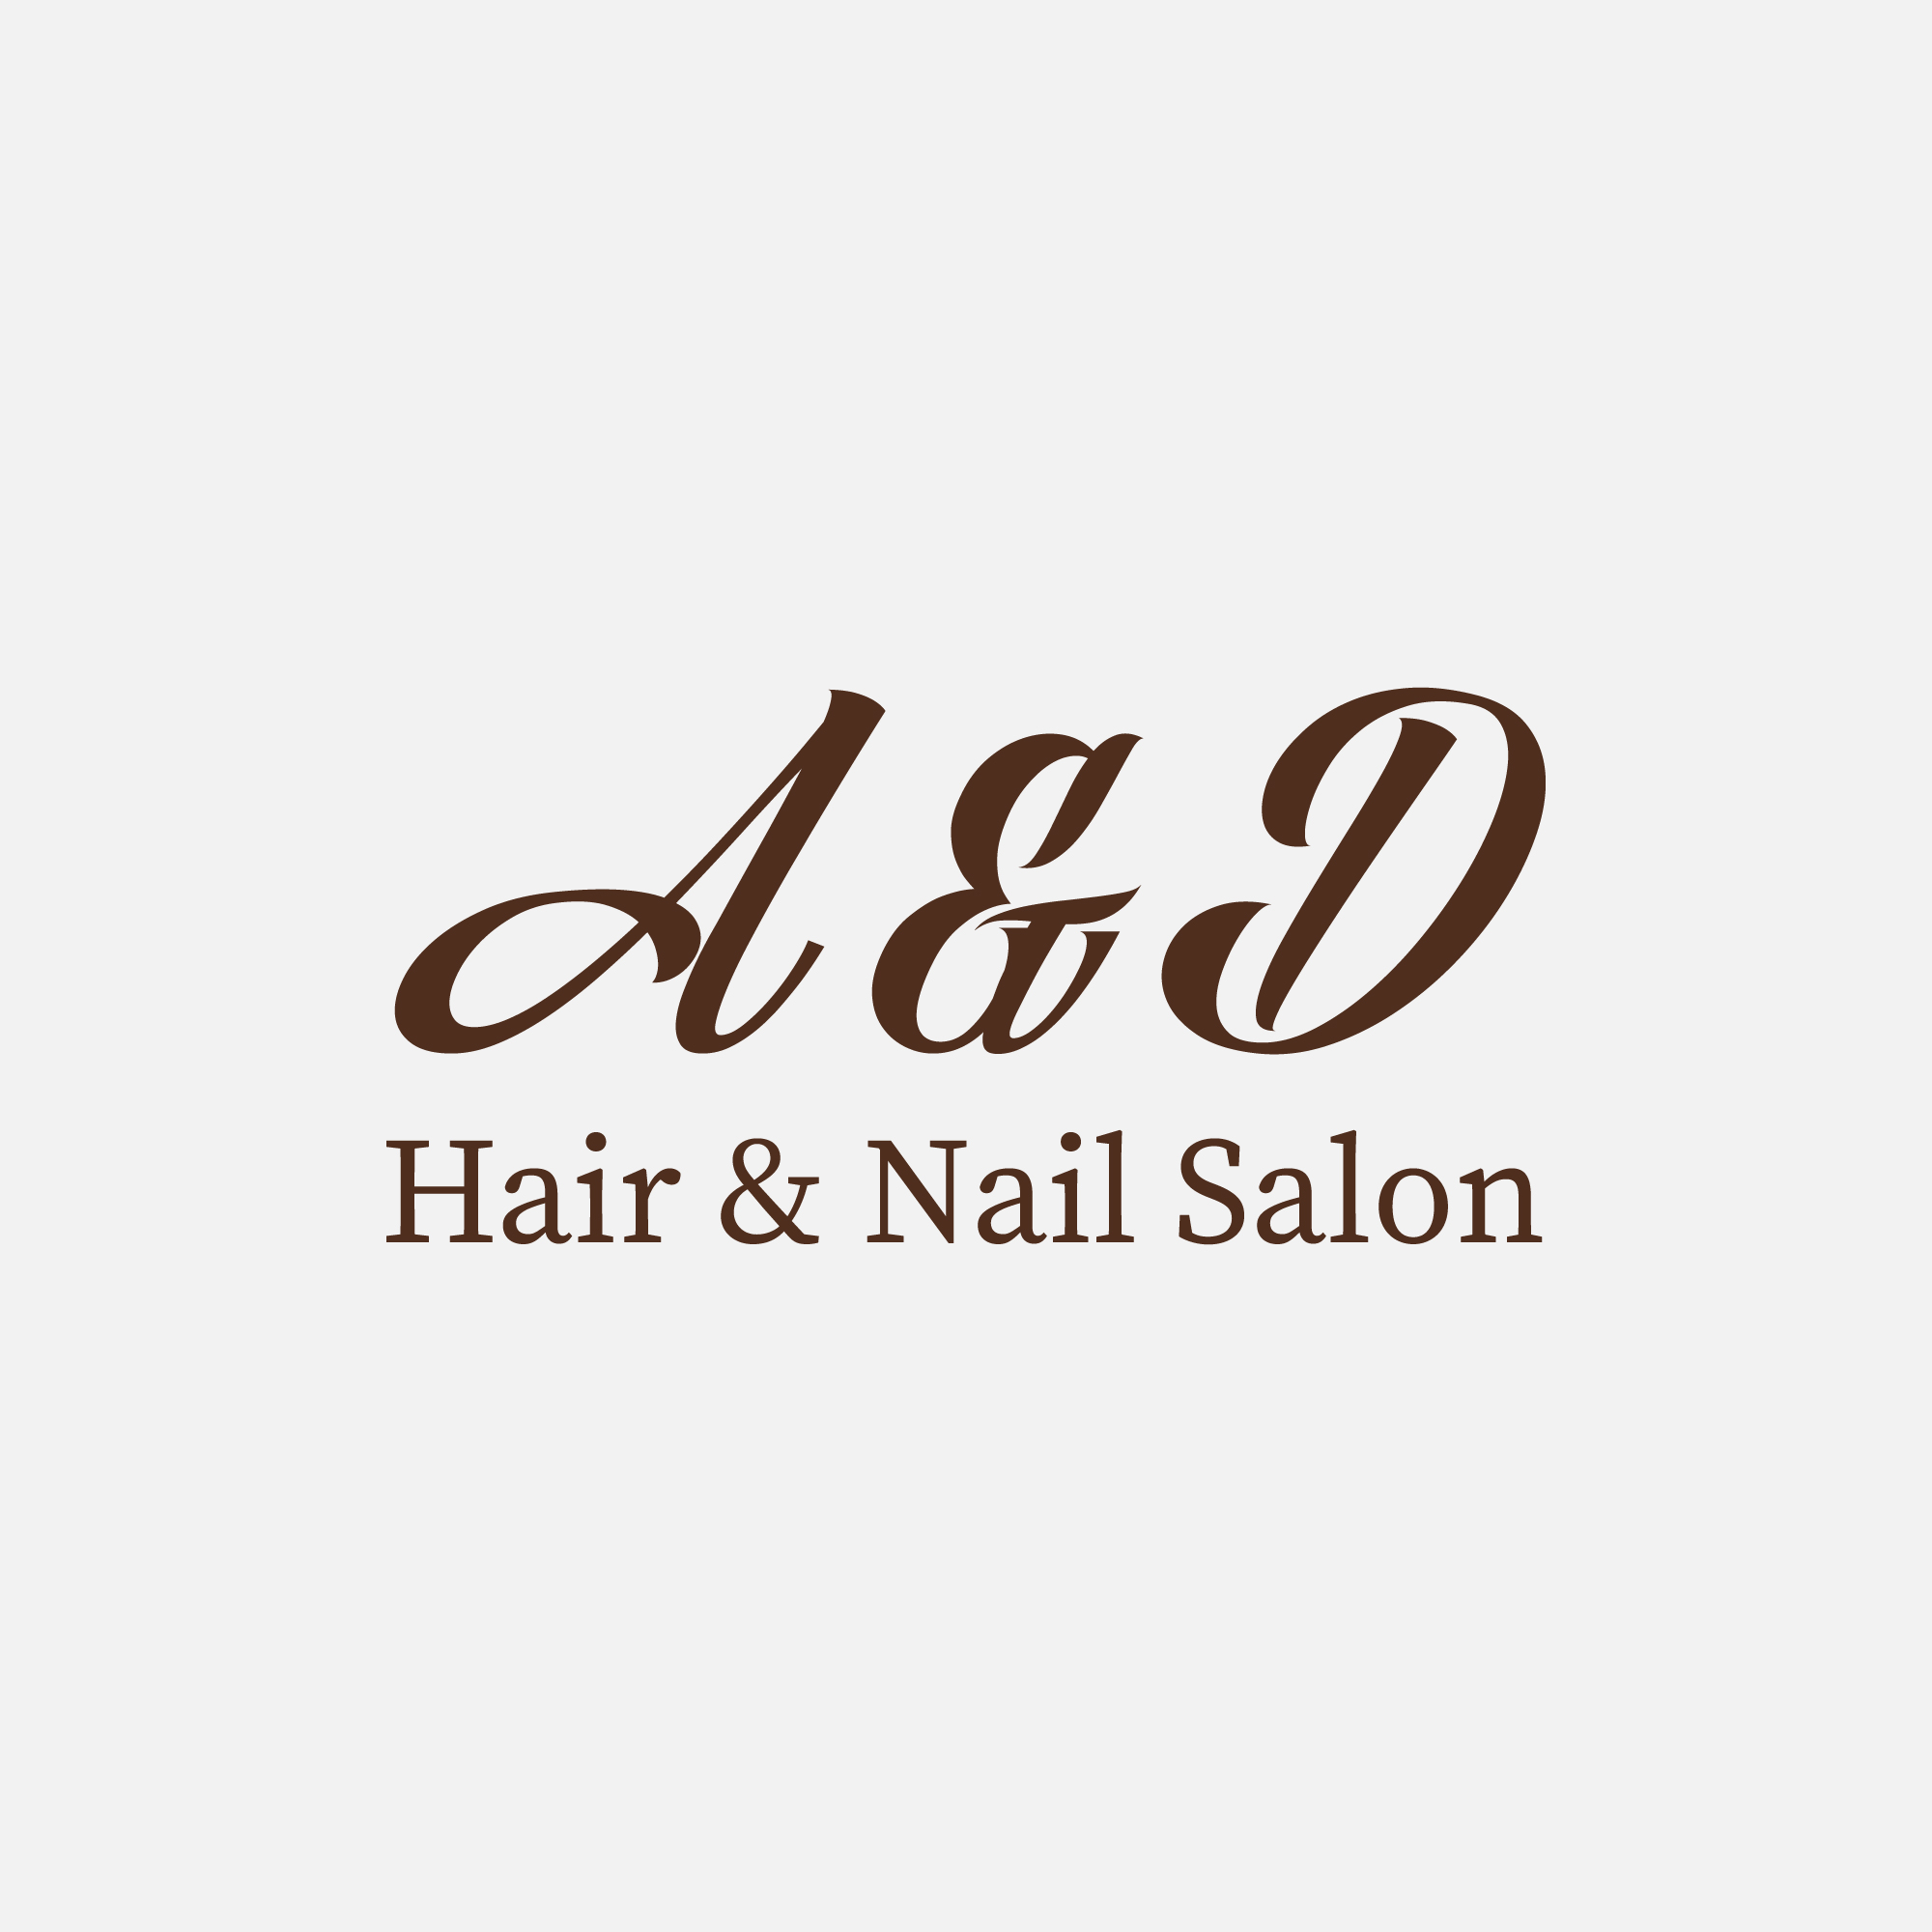 A & D Hair & Nail Salon LLC